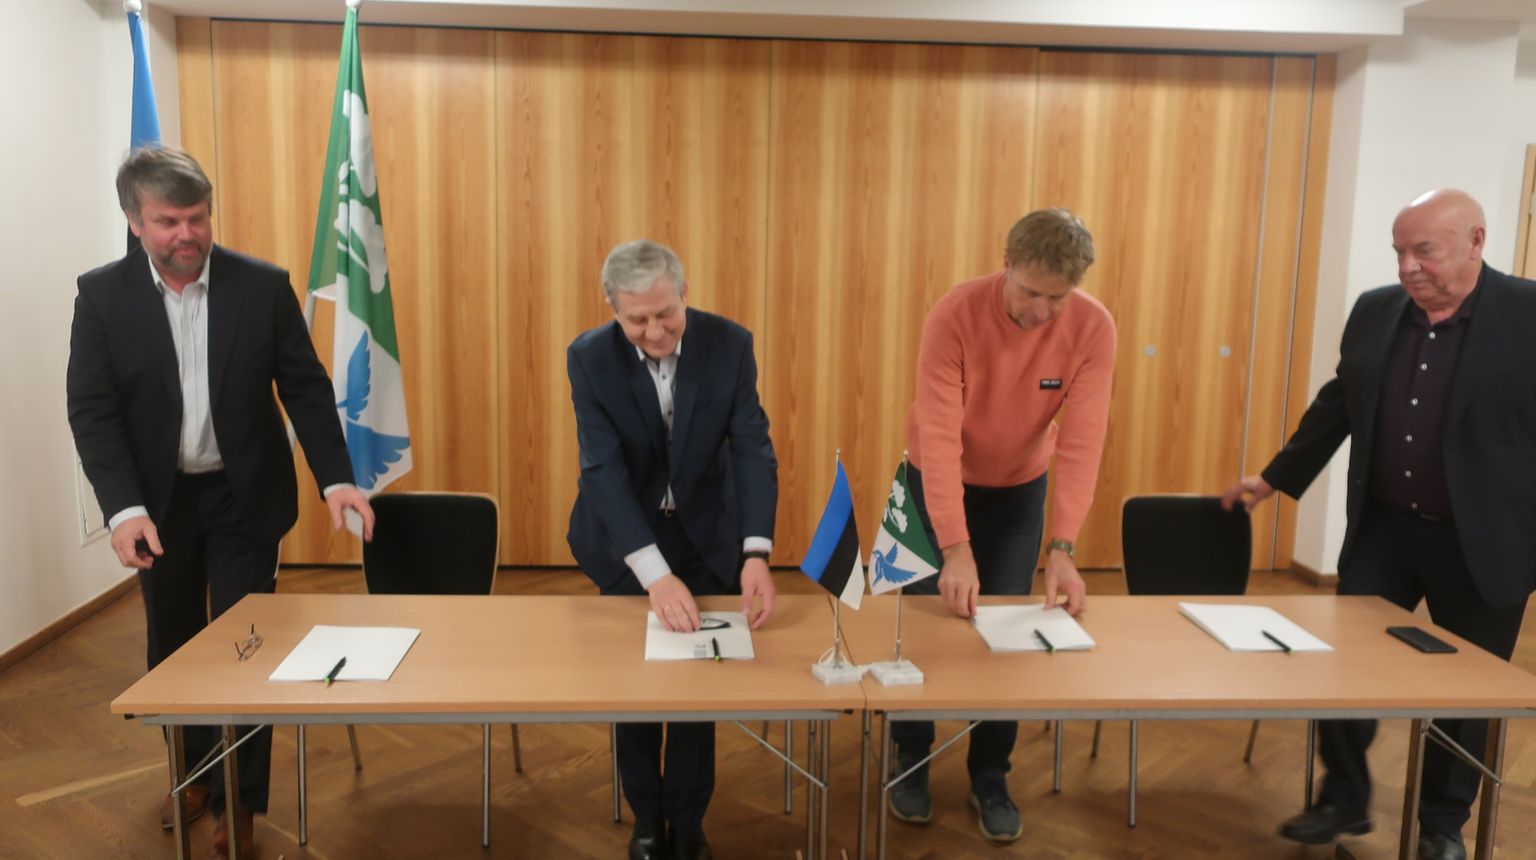 Allkirjad koalitsioonileppele andsid Lennart Liba (vasakult, Reformierakond), Georg Pelisaar (Keskerkond), Arne Tilk (Isamaa) ja Leander Konks (valimisliit Põlva Areng).